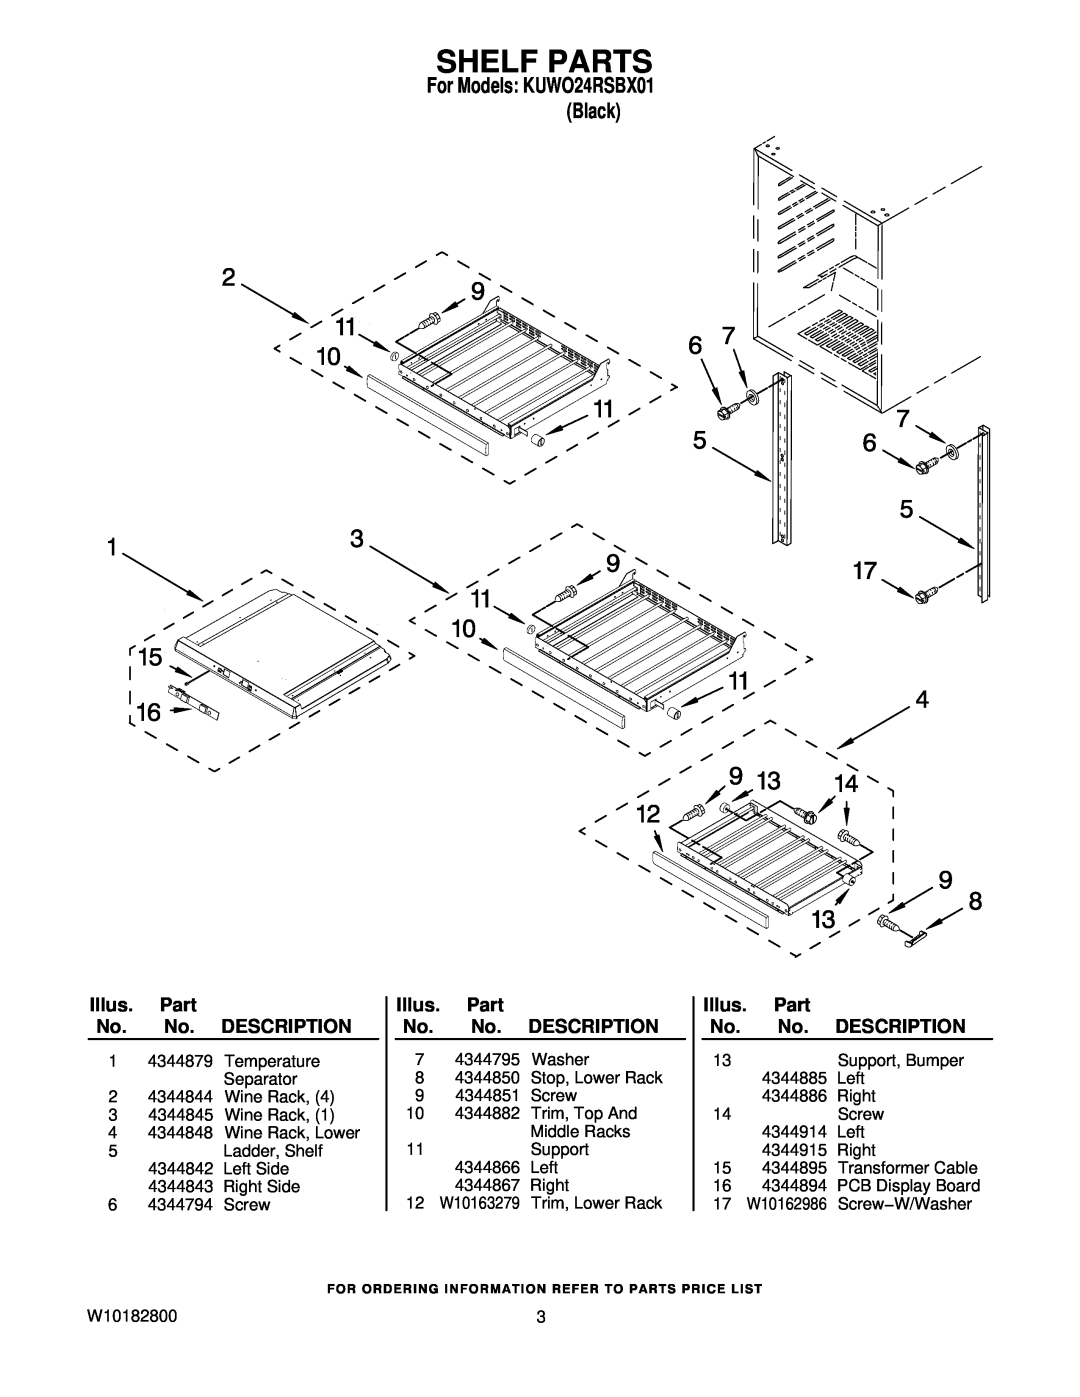 KitchenAid KUWO24RSBX01 manual Shelf Parts, Illus. Part No. No. DESCRIPTION 